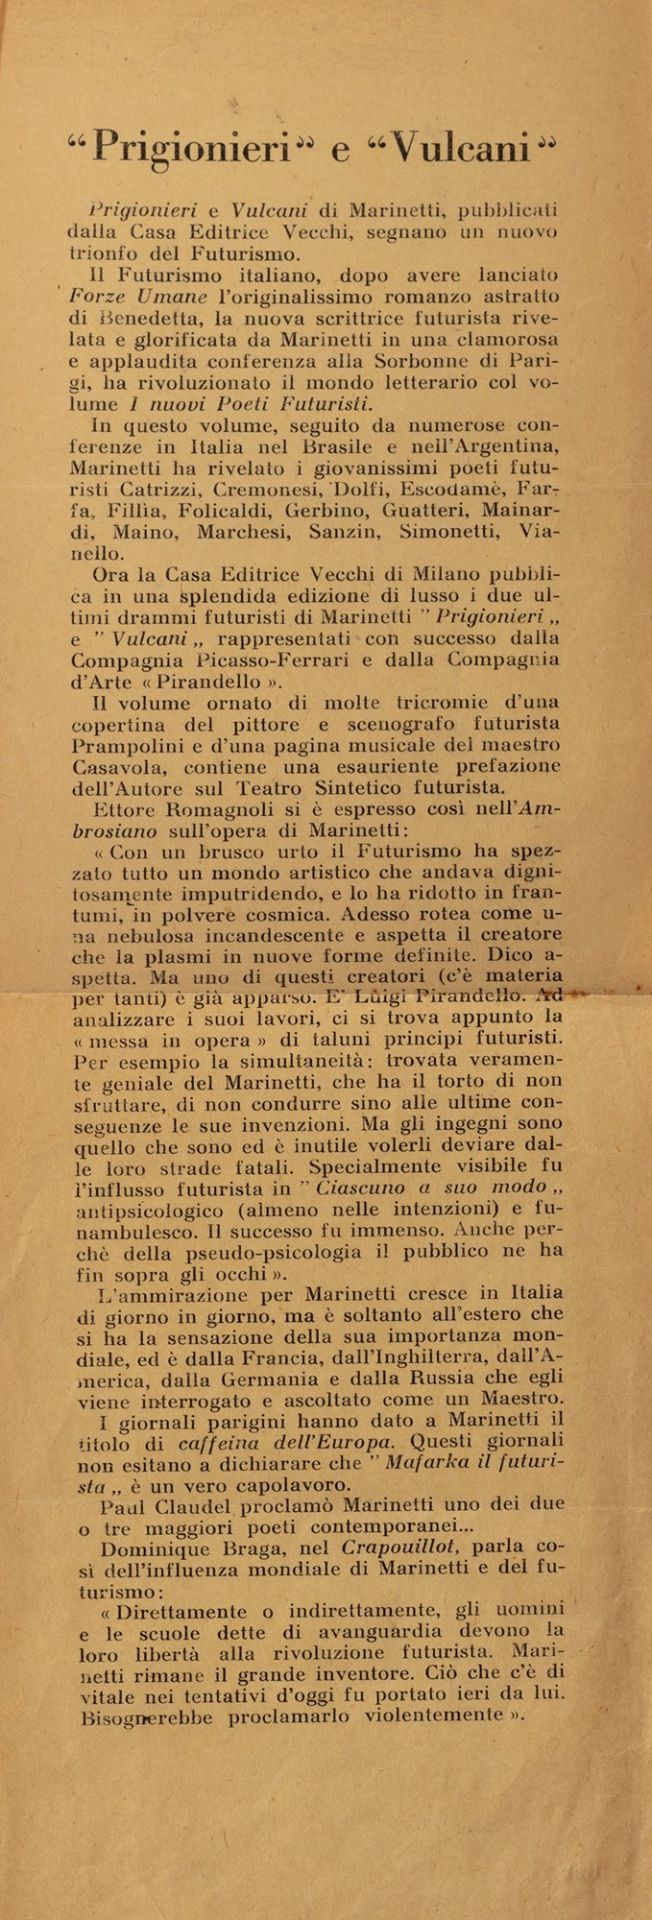 Futurismo - Marinetti, Filippo Tommaso - Prisoners and volcanoes